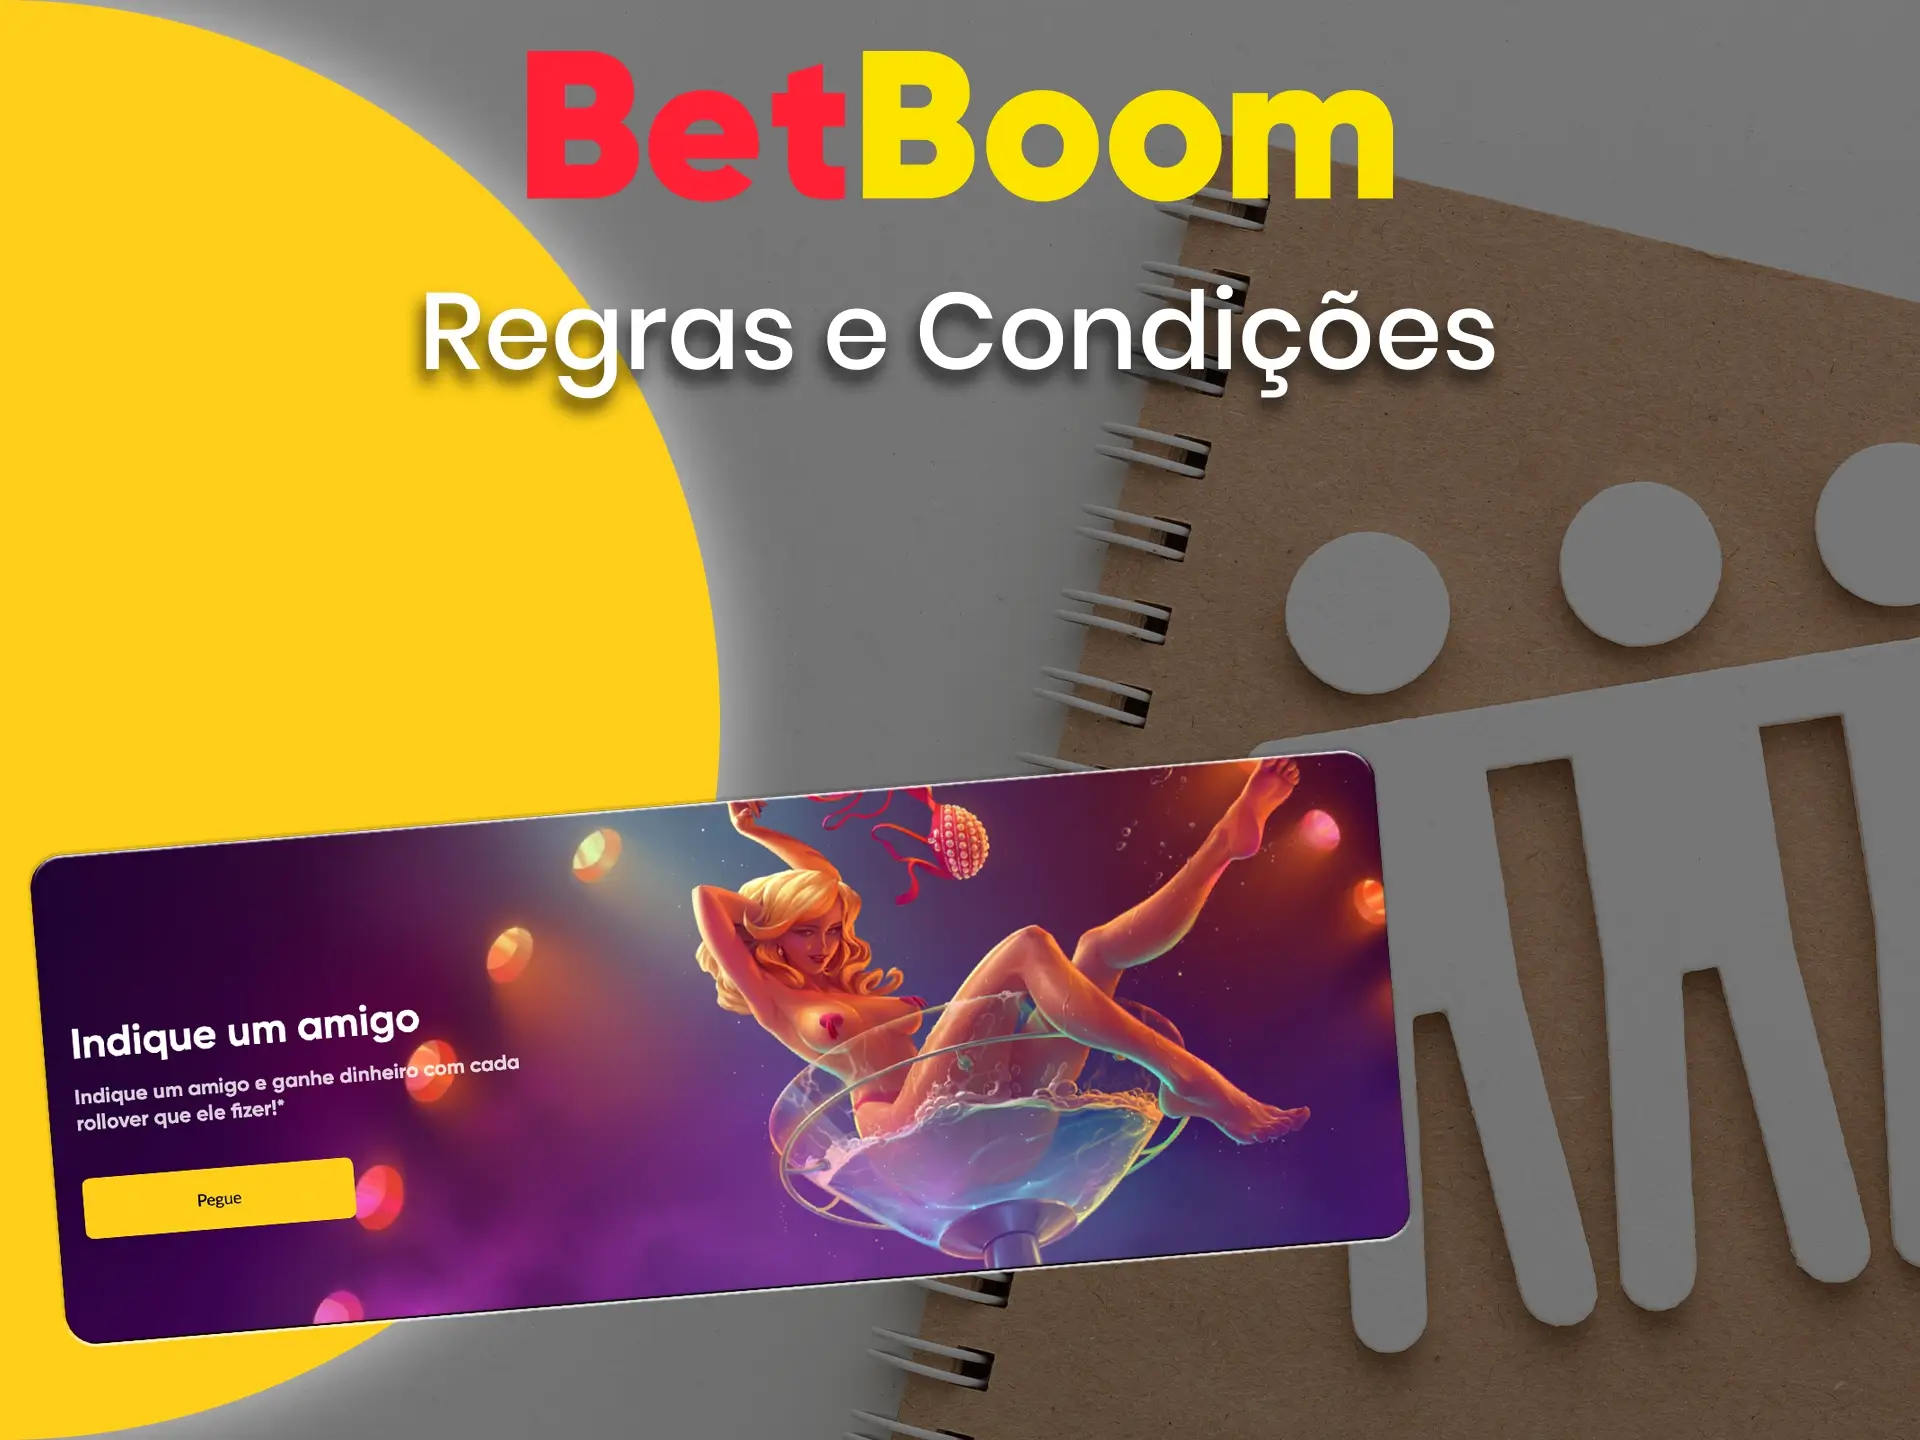 Leia os termos e condições, bem como verifique os pagamentos de bônus do programa de afiliados do BetBoom.